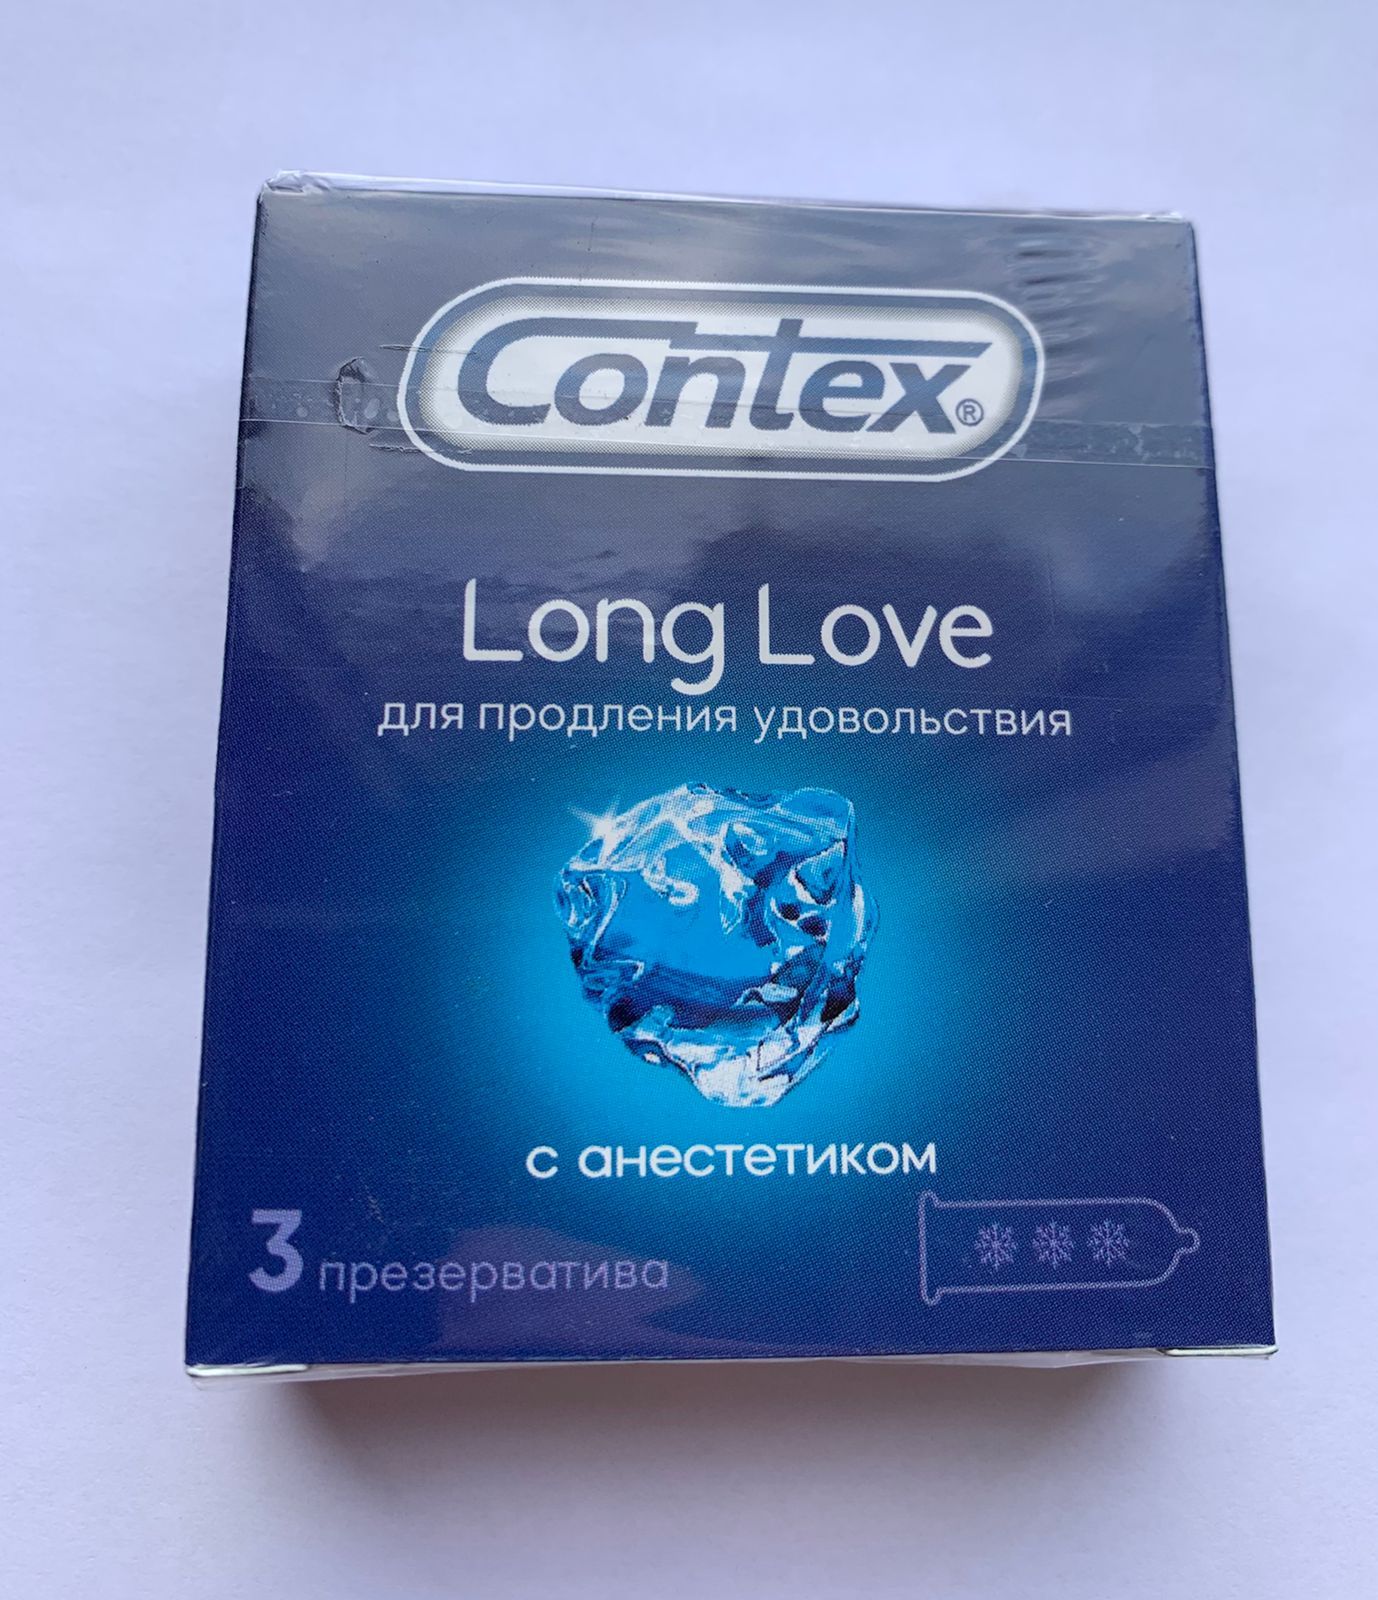 Лонг лов. Презервативы Контекс Лонг лав. Contex long Love 3 шт. Contex презервативы long Love с анестетиком, 3 шт. Контекс Лонг лав с анестетиком.